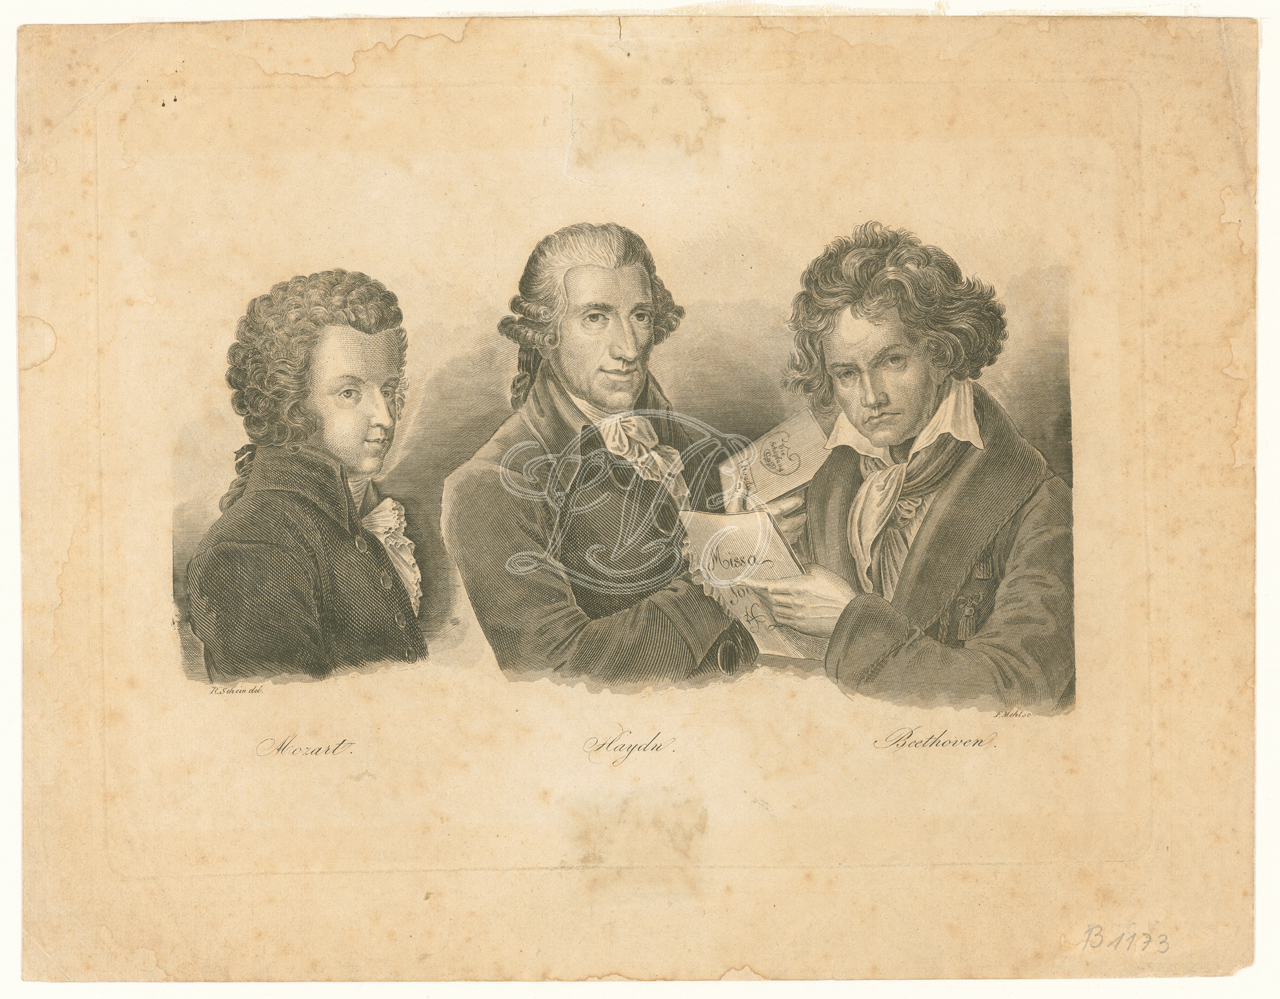 Mozart, Haydn and Beethoven, Engraving by F. Mehl after a drawing by R. Schein, before 1845, Beethoven-Haus Bonn https://www.beethoven.de/de/media/view/5364432465035264/Mozart%2C+Haydn%2C+Beethoven+-+Stich+von+F.+Mehl+nach+einer+Zeichnung+von+R.+Schein